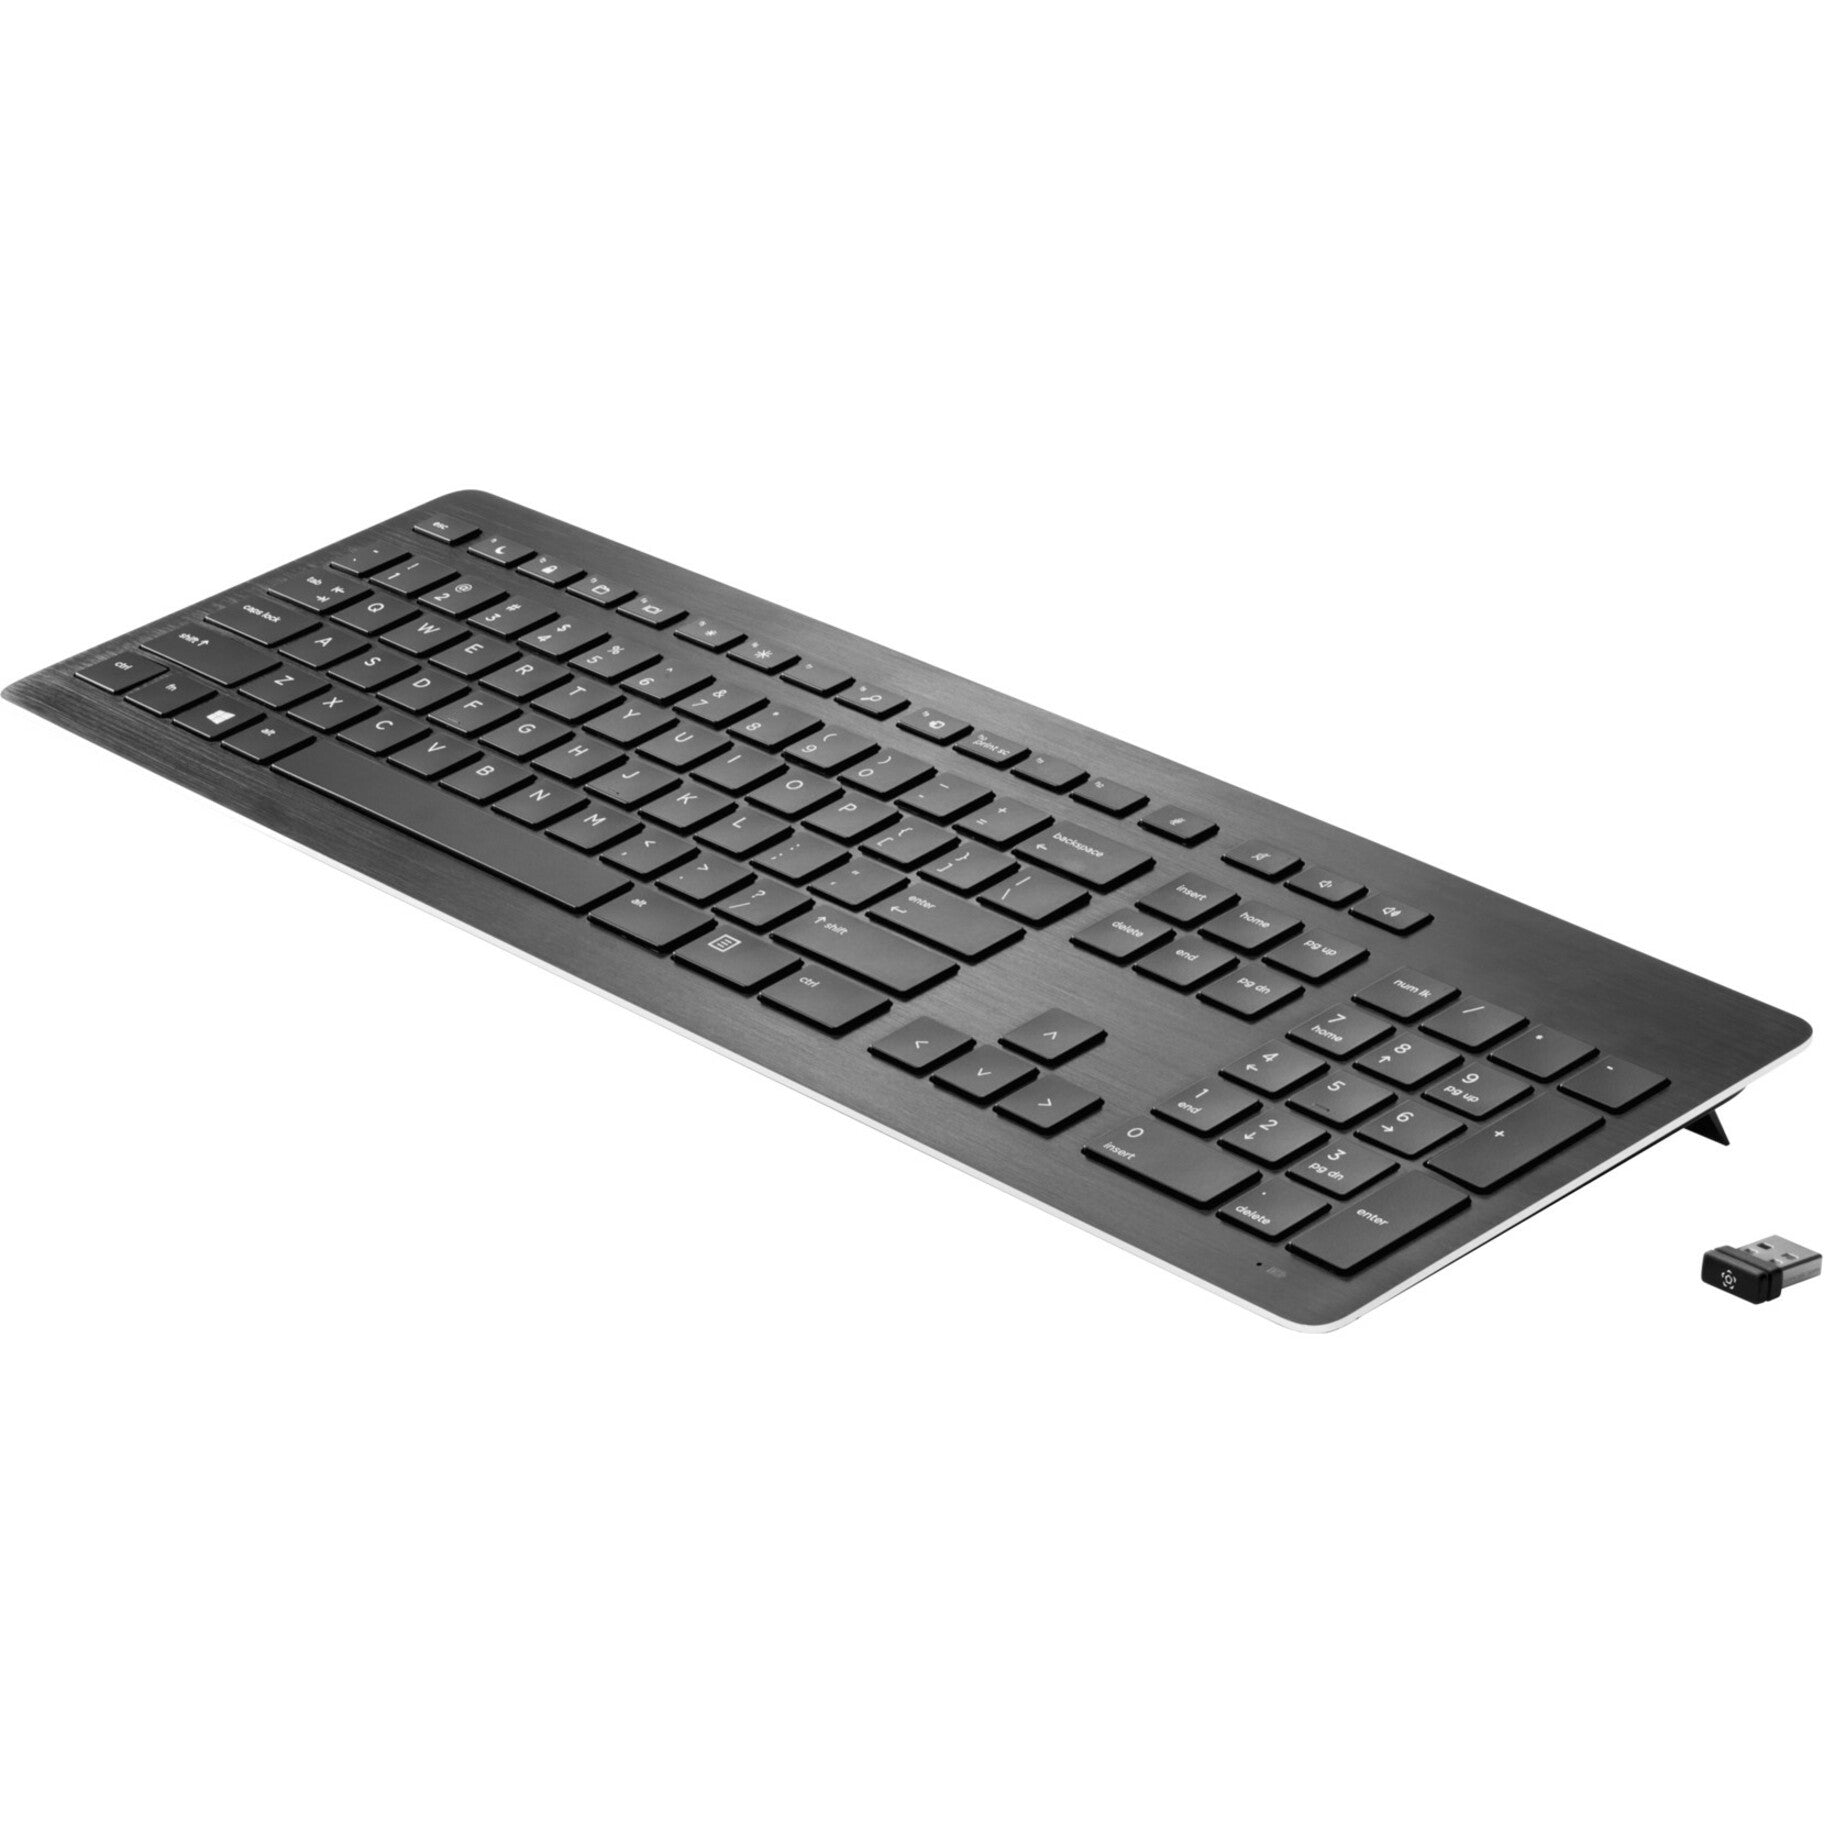 HP Wireless Premium Keyboard U.S. - English, QWERTY Layout, 109 Keys, Scissors Keyswitch Technology